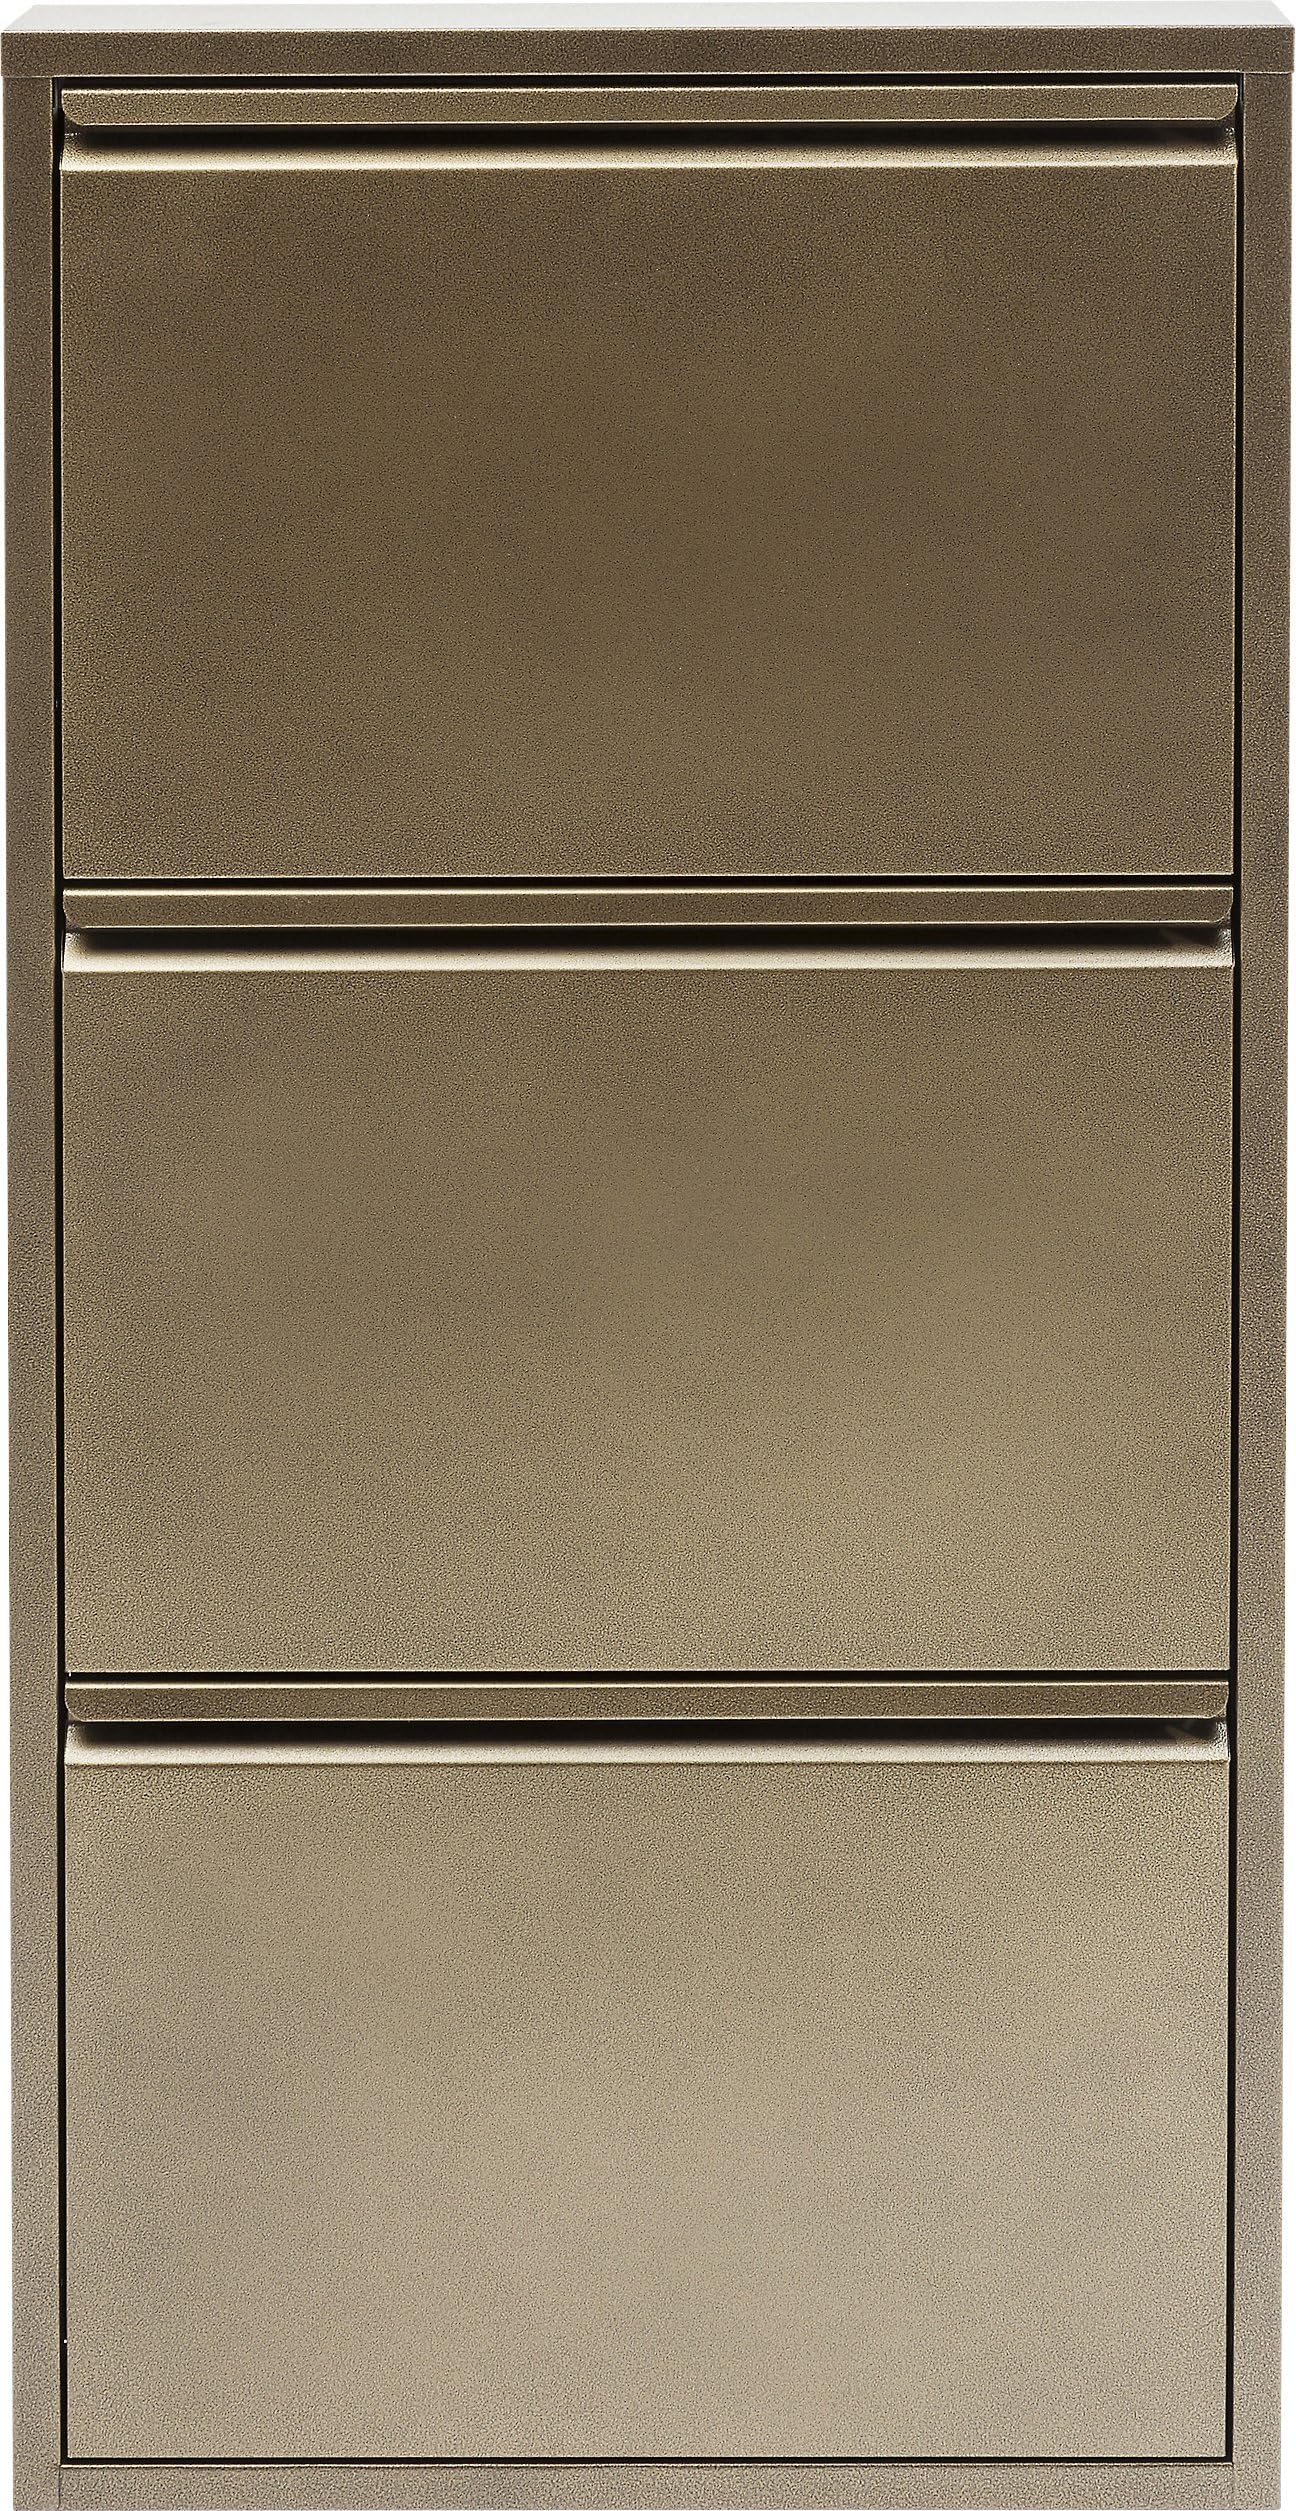 Kare Design Schuhschrank Caruso, Bronze, Schuhregal, Stahl, Schuhablage mit 3 Klappen, für 6 Paar Schuhe, schmal, platzsparend, 103x50x14 cm (H/B/T)